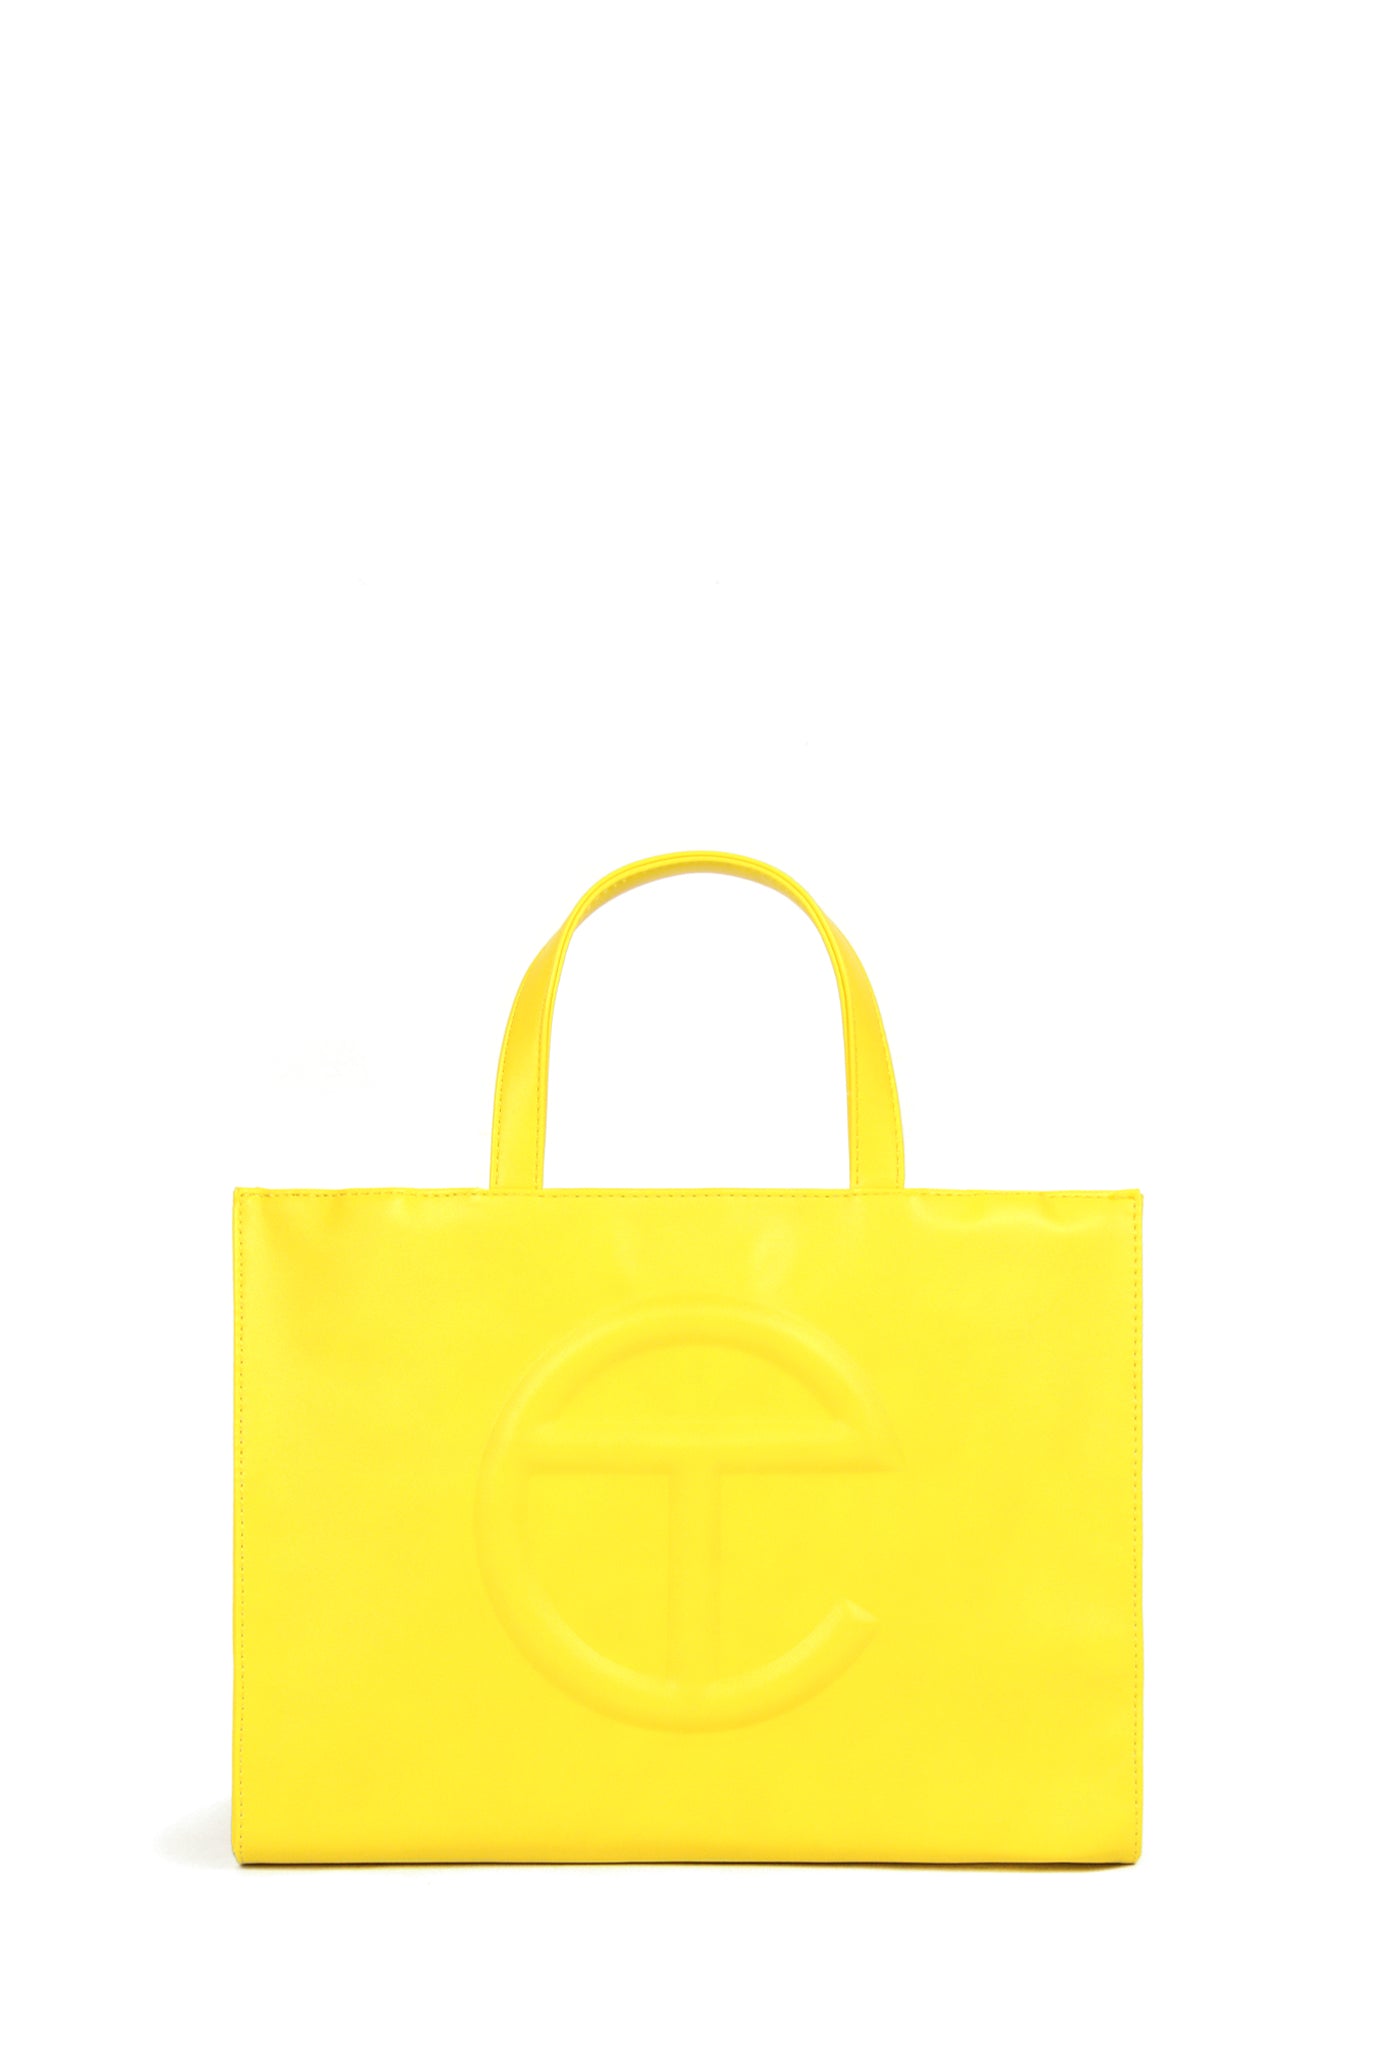 Telfar Medium Shopping Bag, Yellow